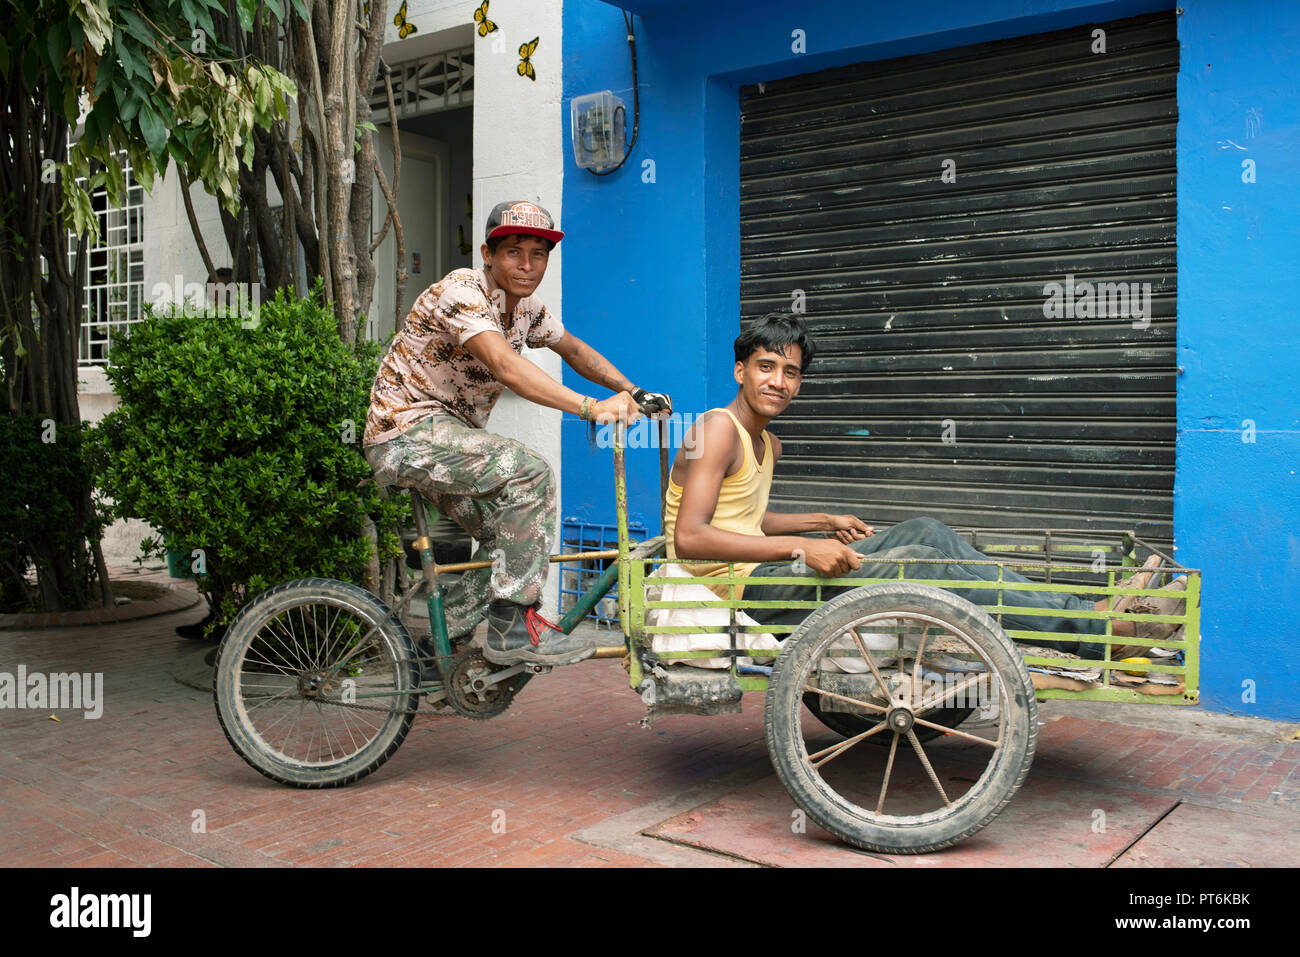 Porträt von zwei jungen Latino-Männern, nach der Arbeit, sitzen in einem Lastenrad. Santa Marta, Kolumbien. Umweltportrait, redaktionelle Verwendung. September 2018 Stockfoto